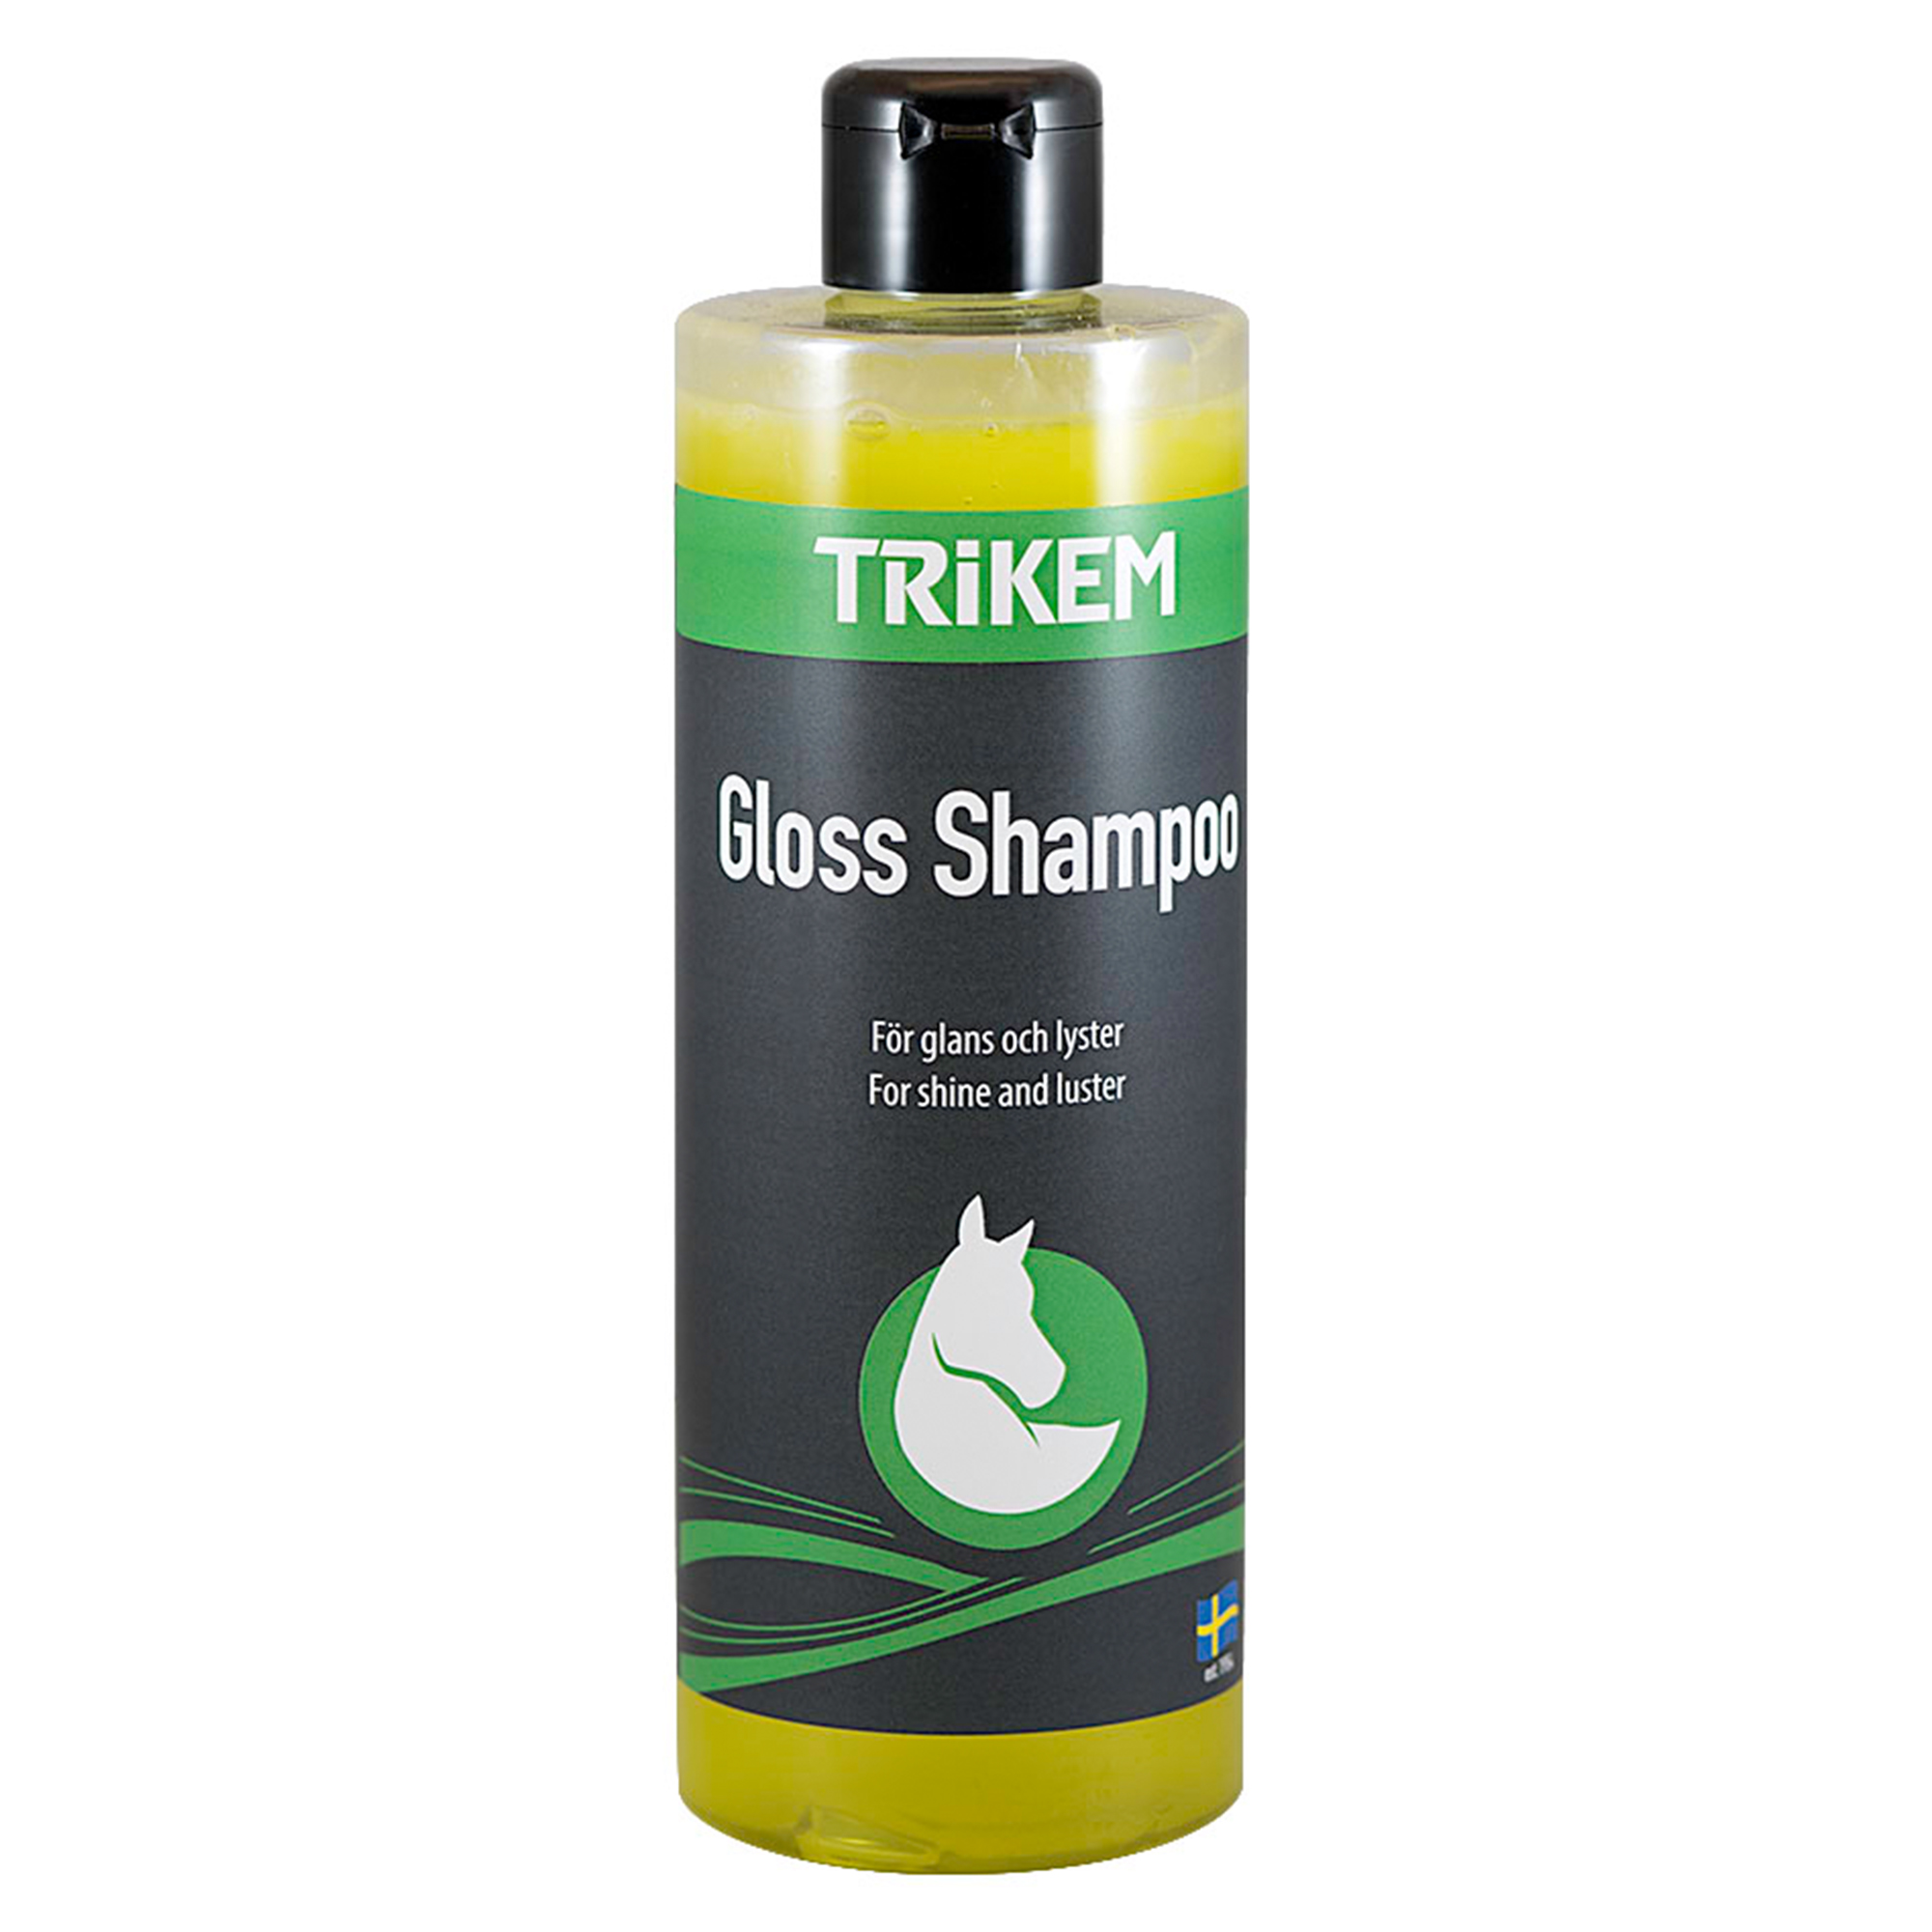 TRIKEM Gloss Shampoo 500 ml